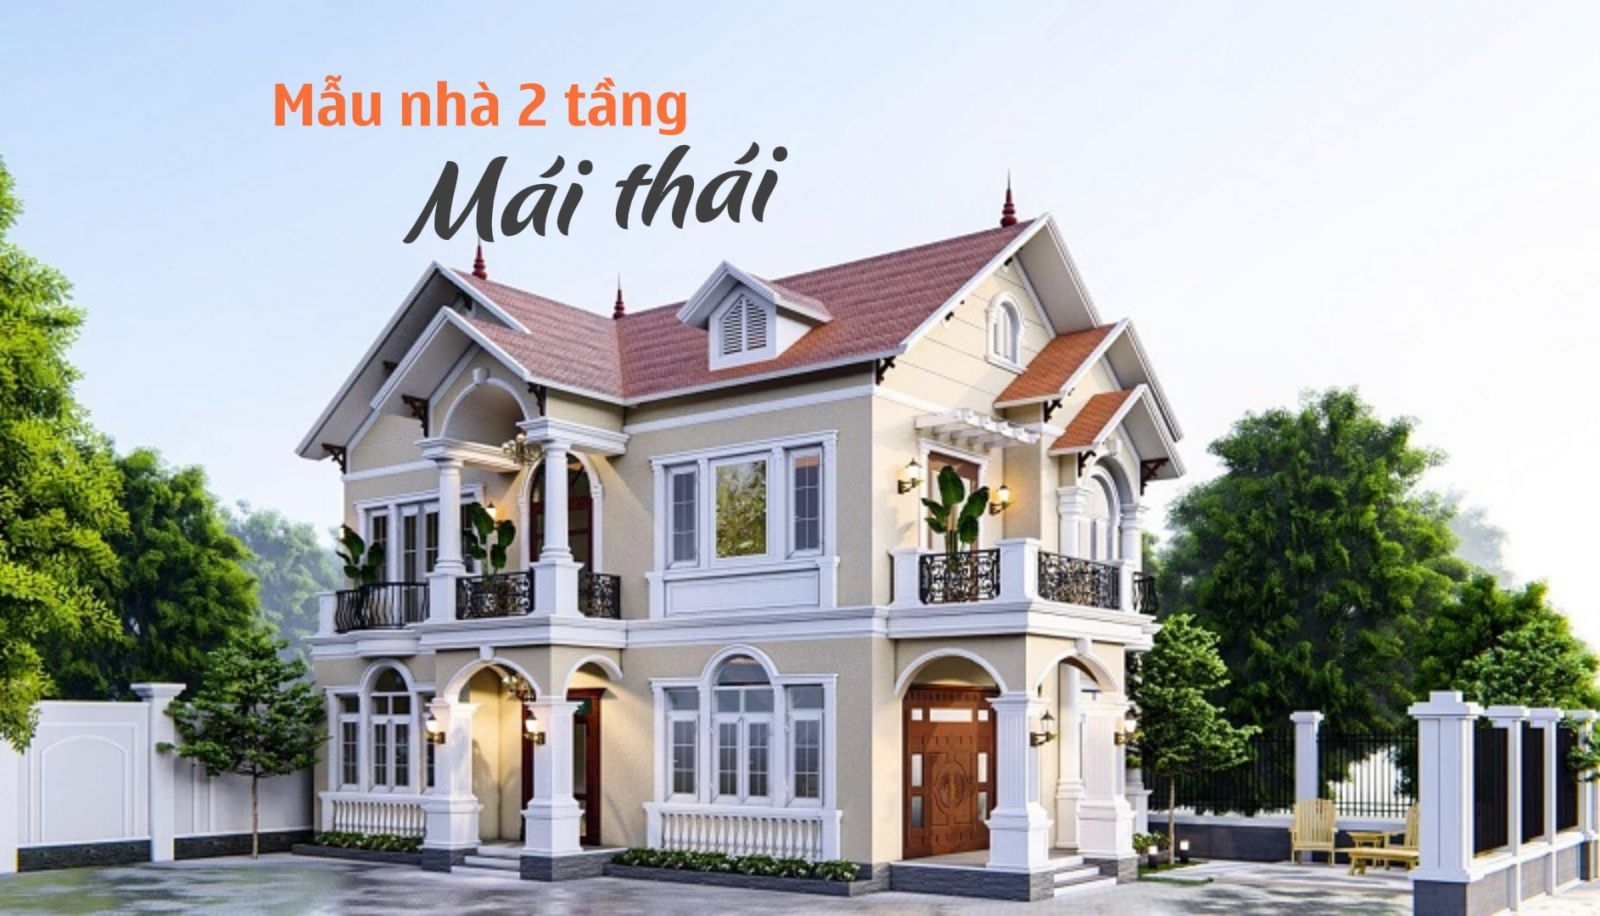 Mẫu nhà 2 tầng mái Thái